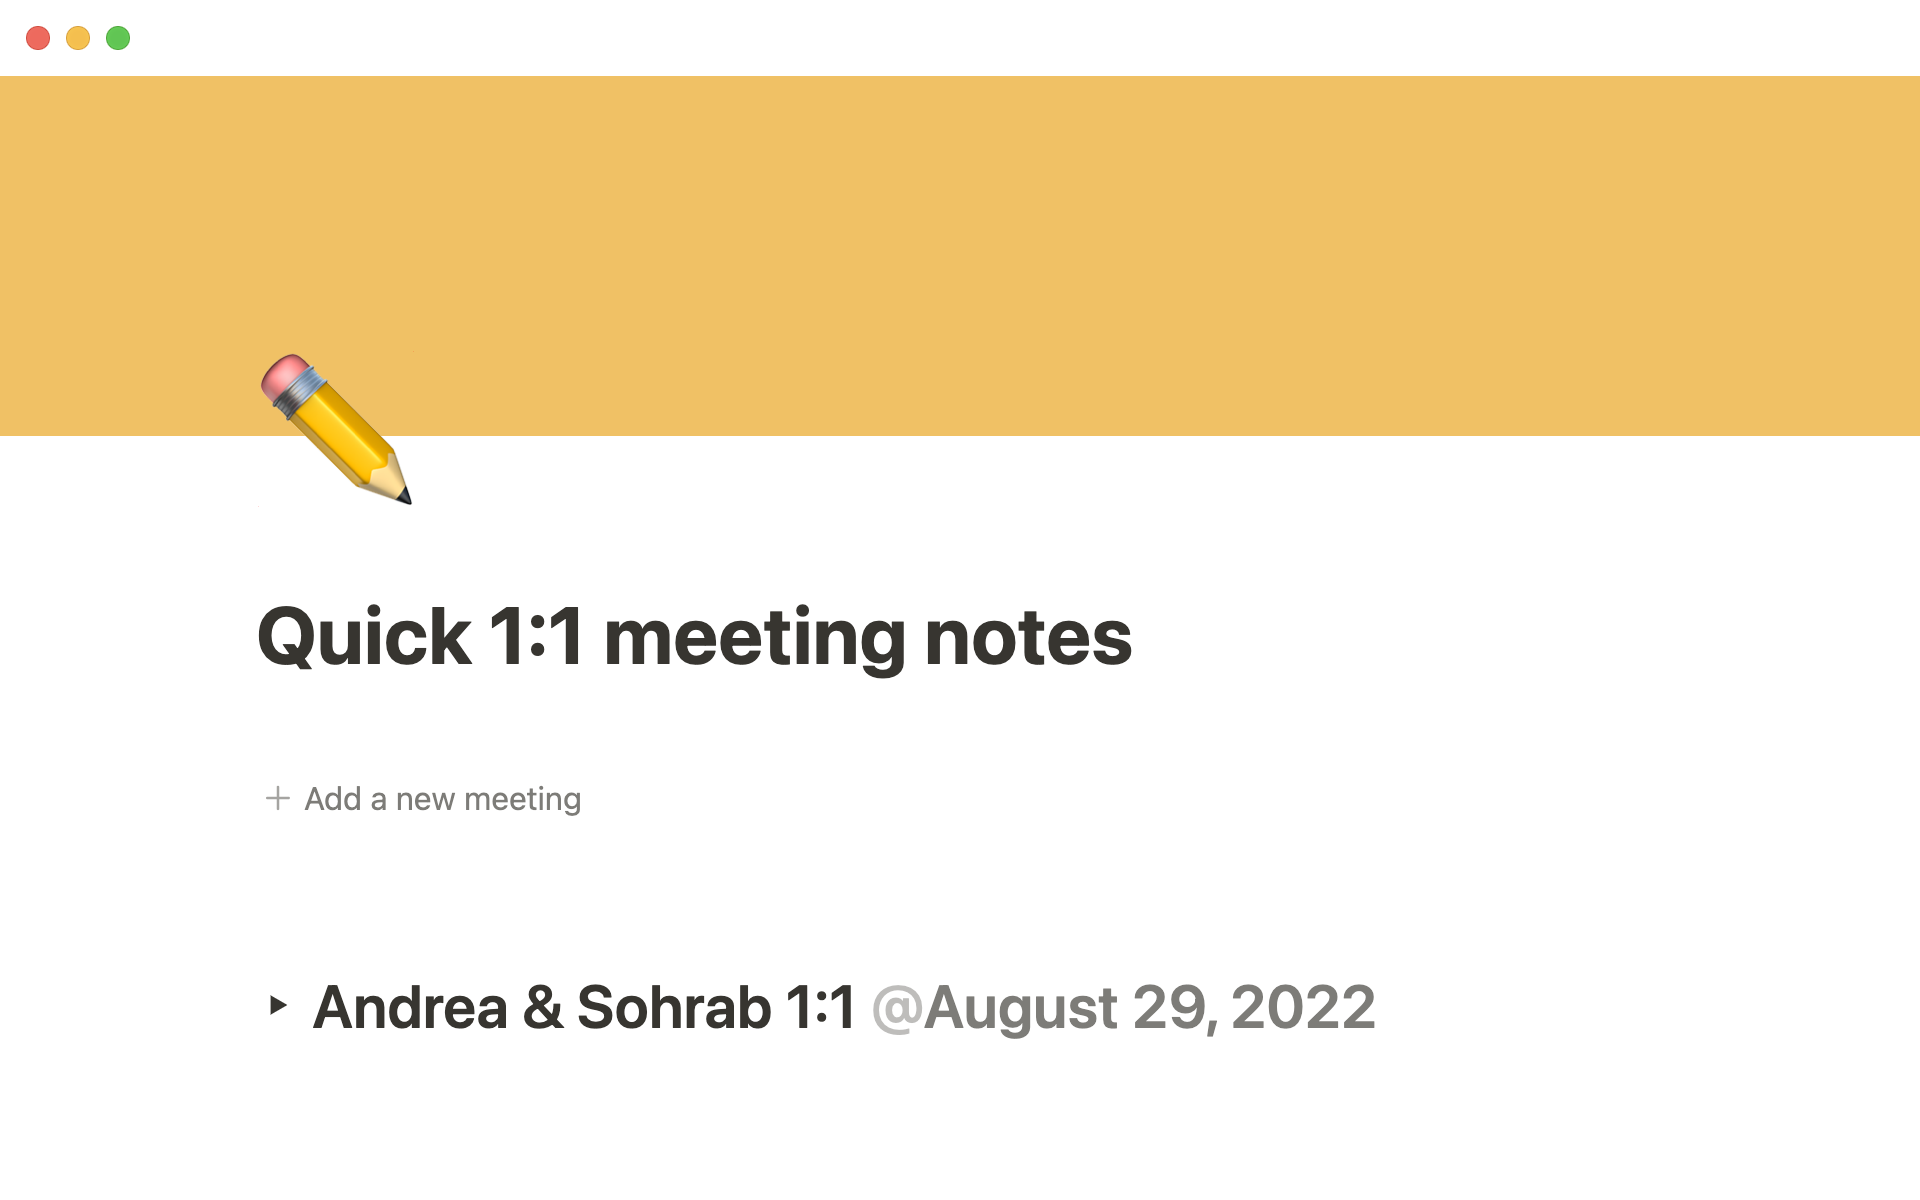 En förhandsgranskning av mallen för Quick 1:1 meeting notes